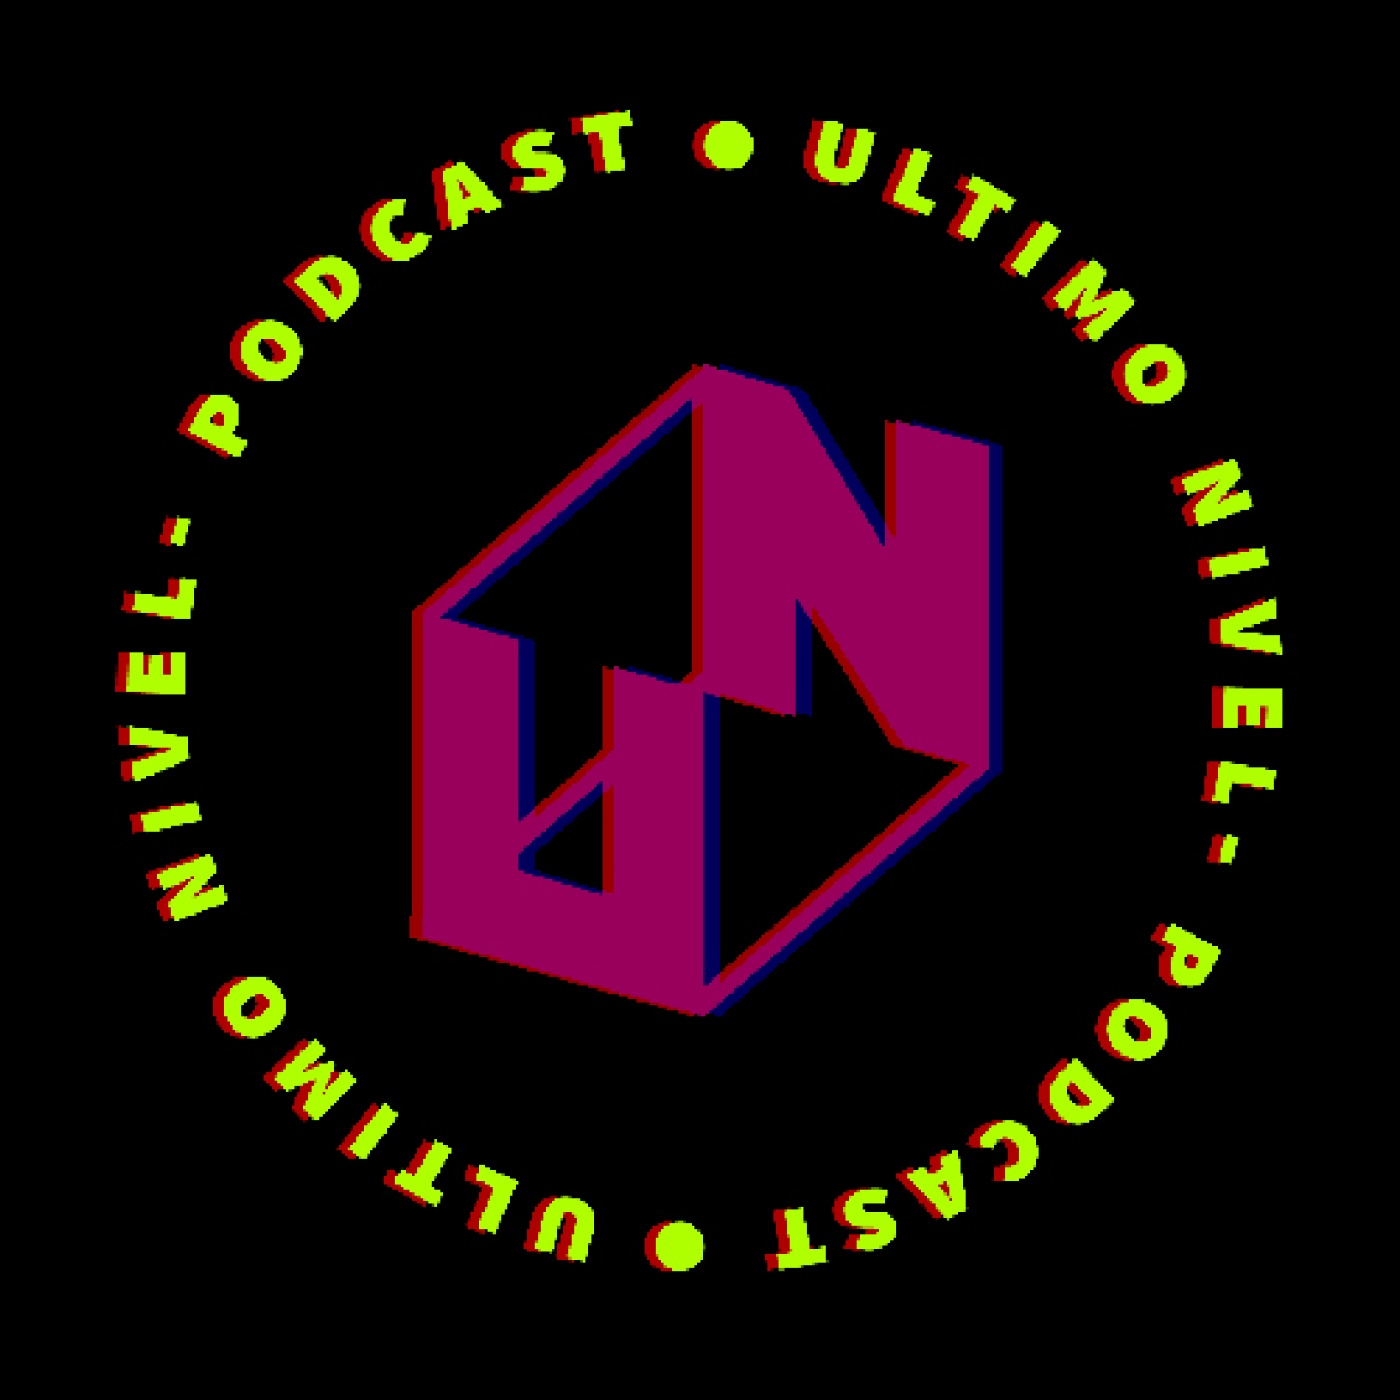 Ultimo Nivel Podcast - S03E18 - "Especial de halloween historicamente fallido tercera edición"